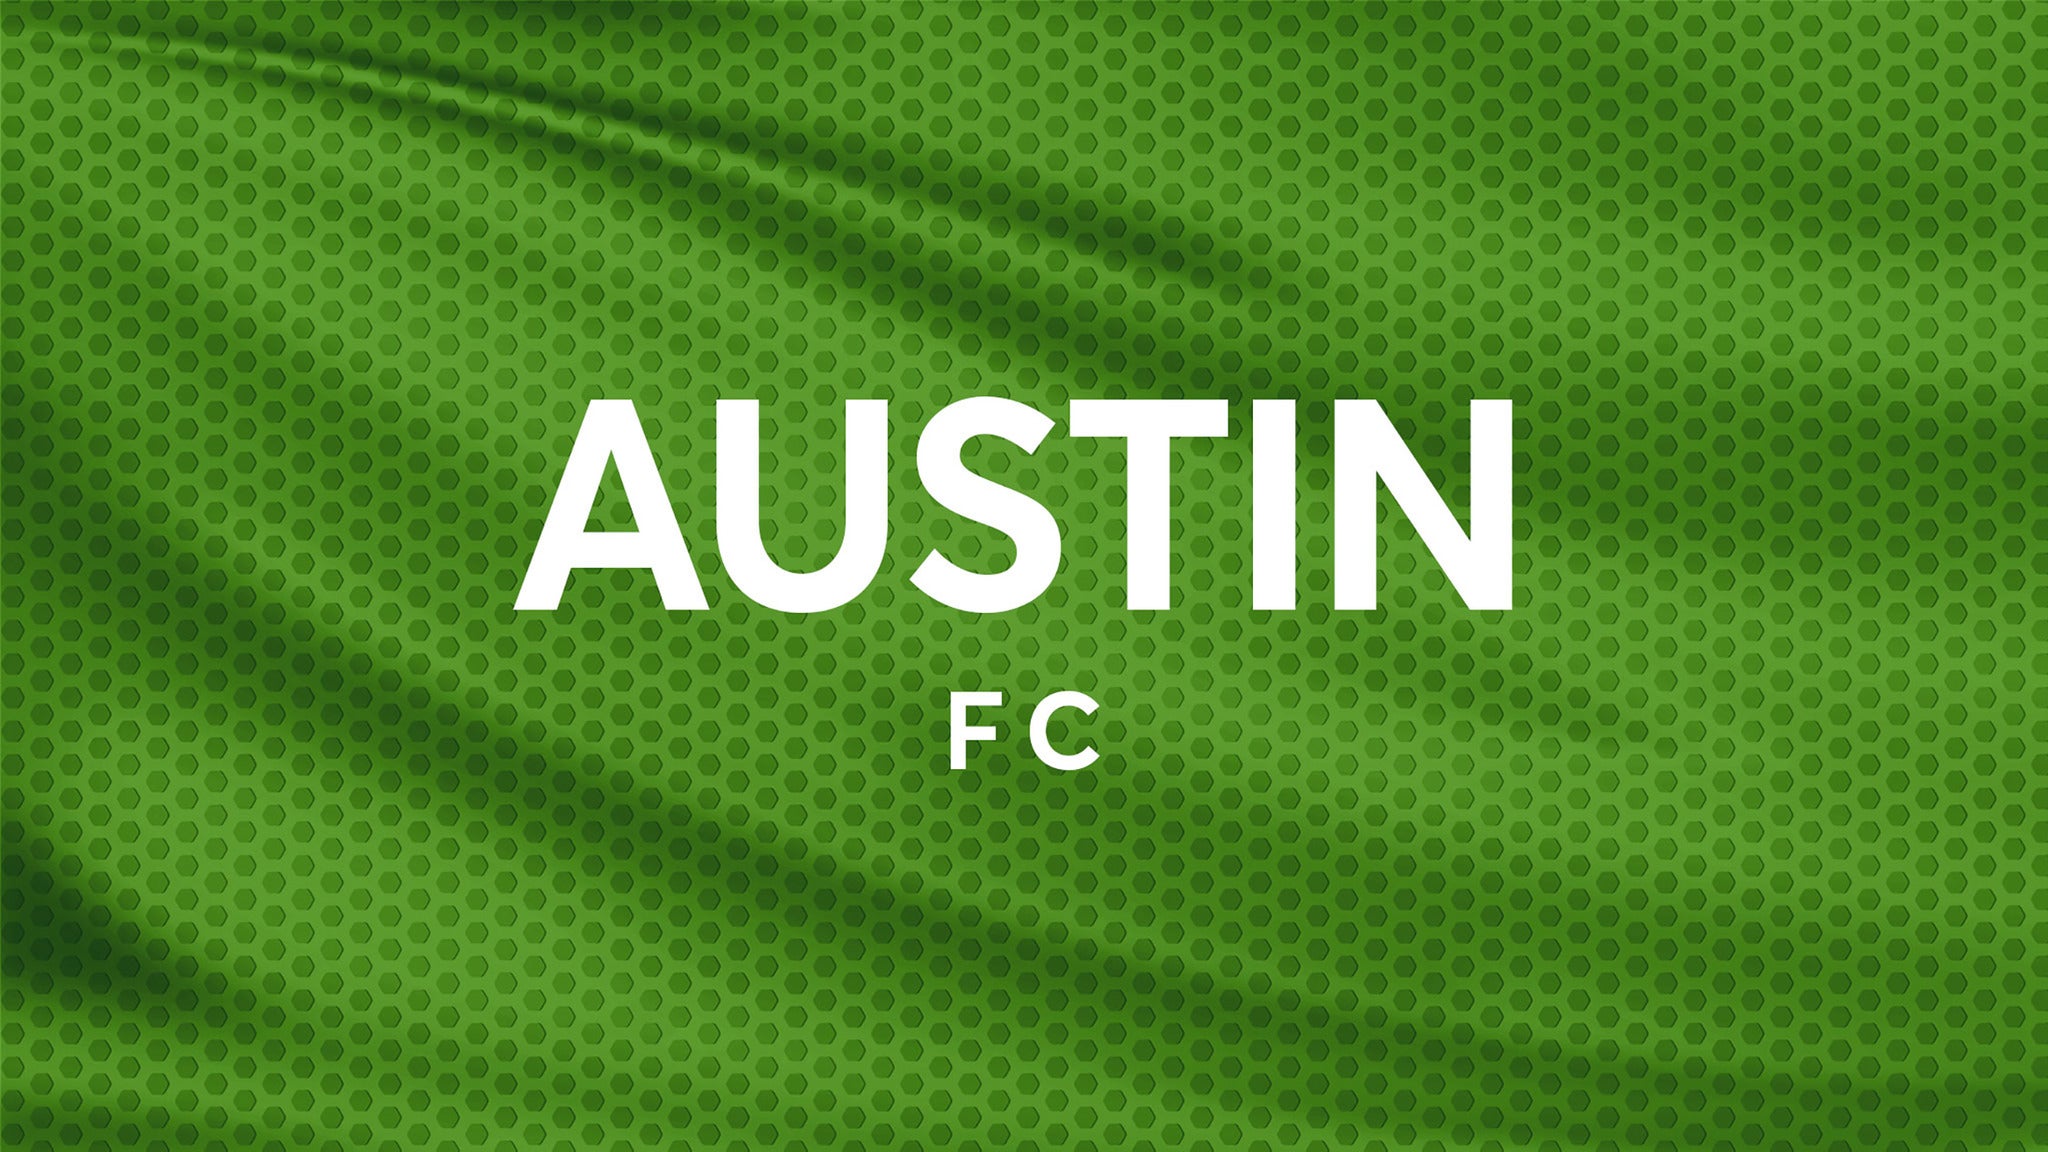 Austin FC vs. Colorado Rapids at Q2 Stadium